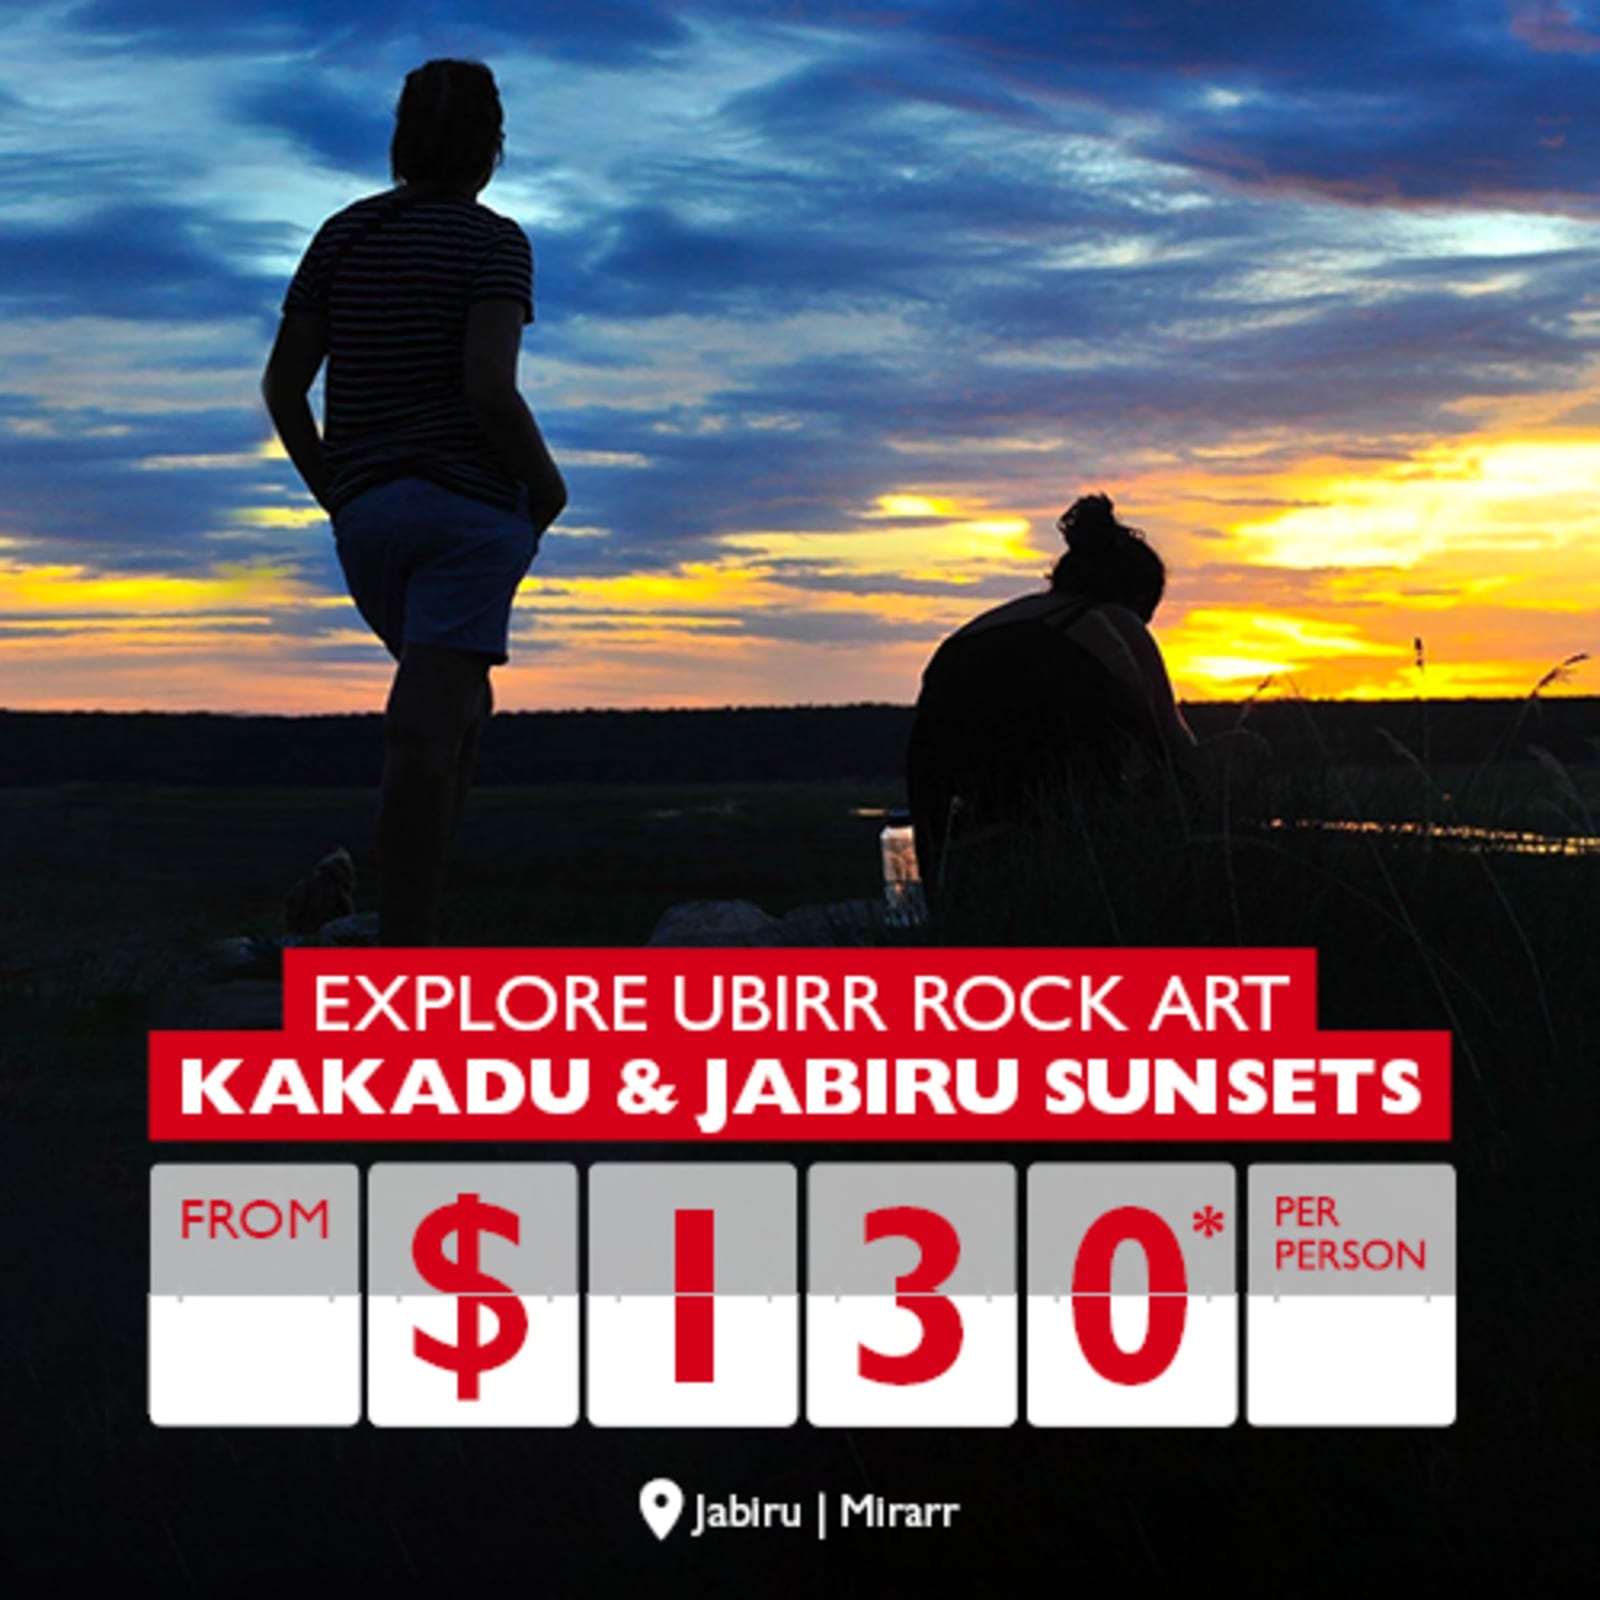 Explore Ubirr Rock Art | Kakadu & Jabiru Sunsets from $130* per person